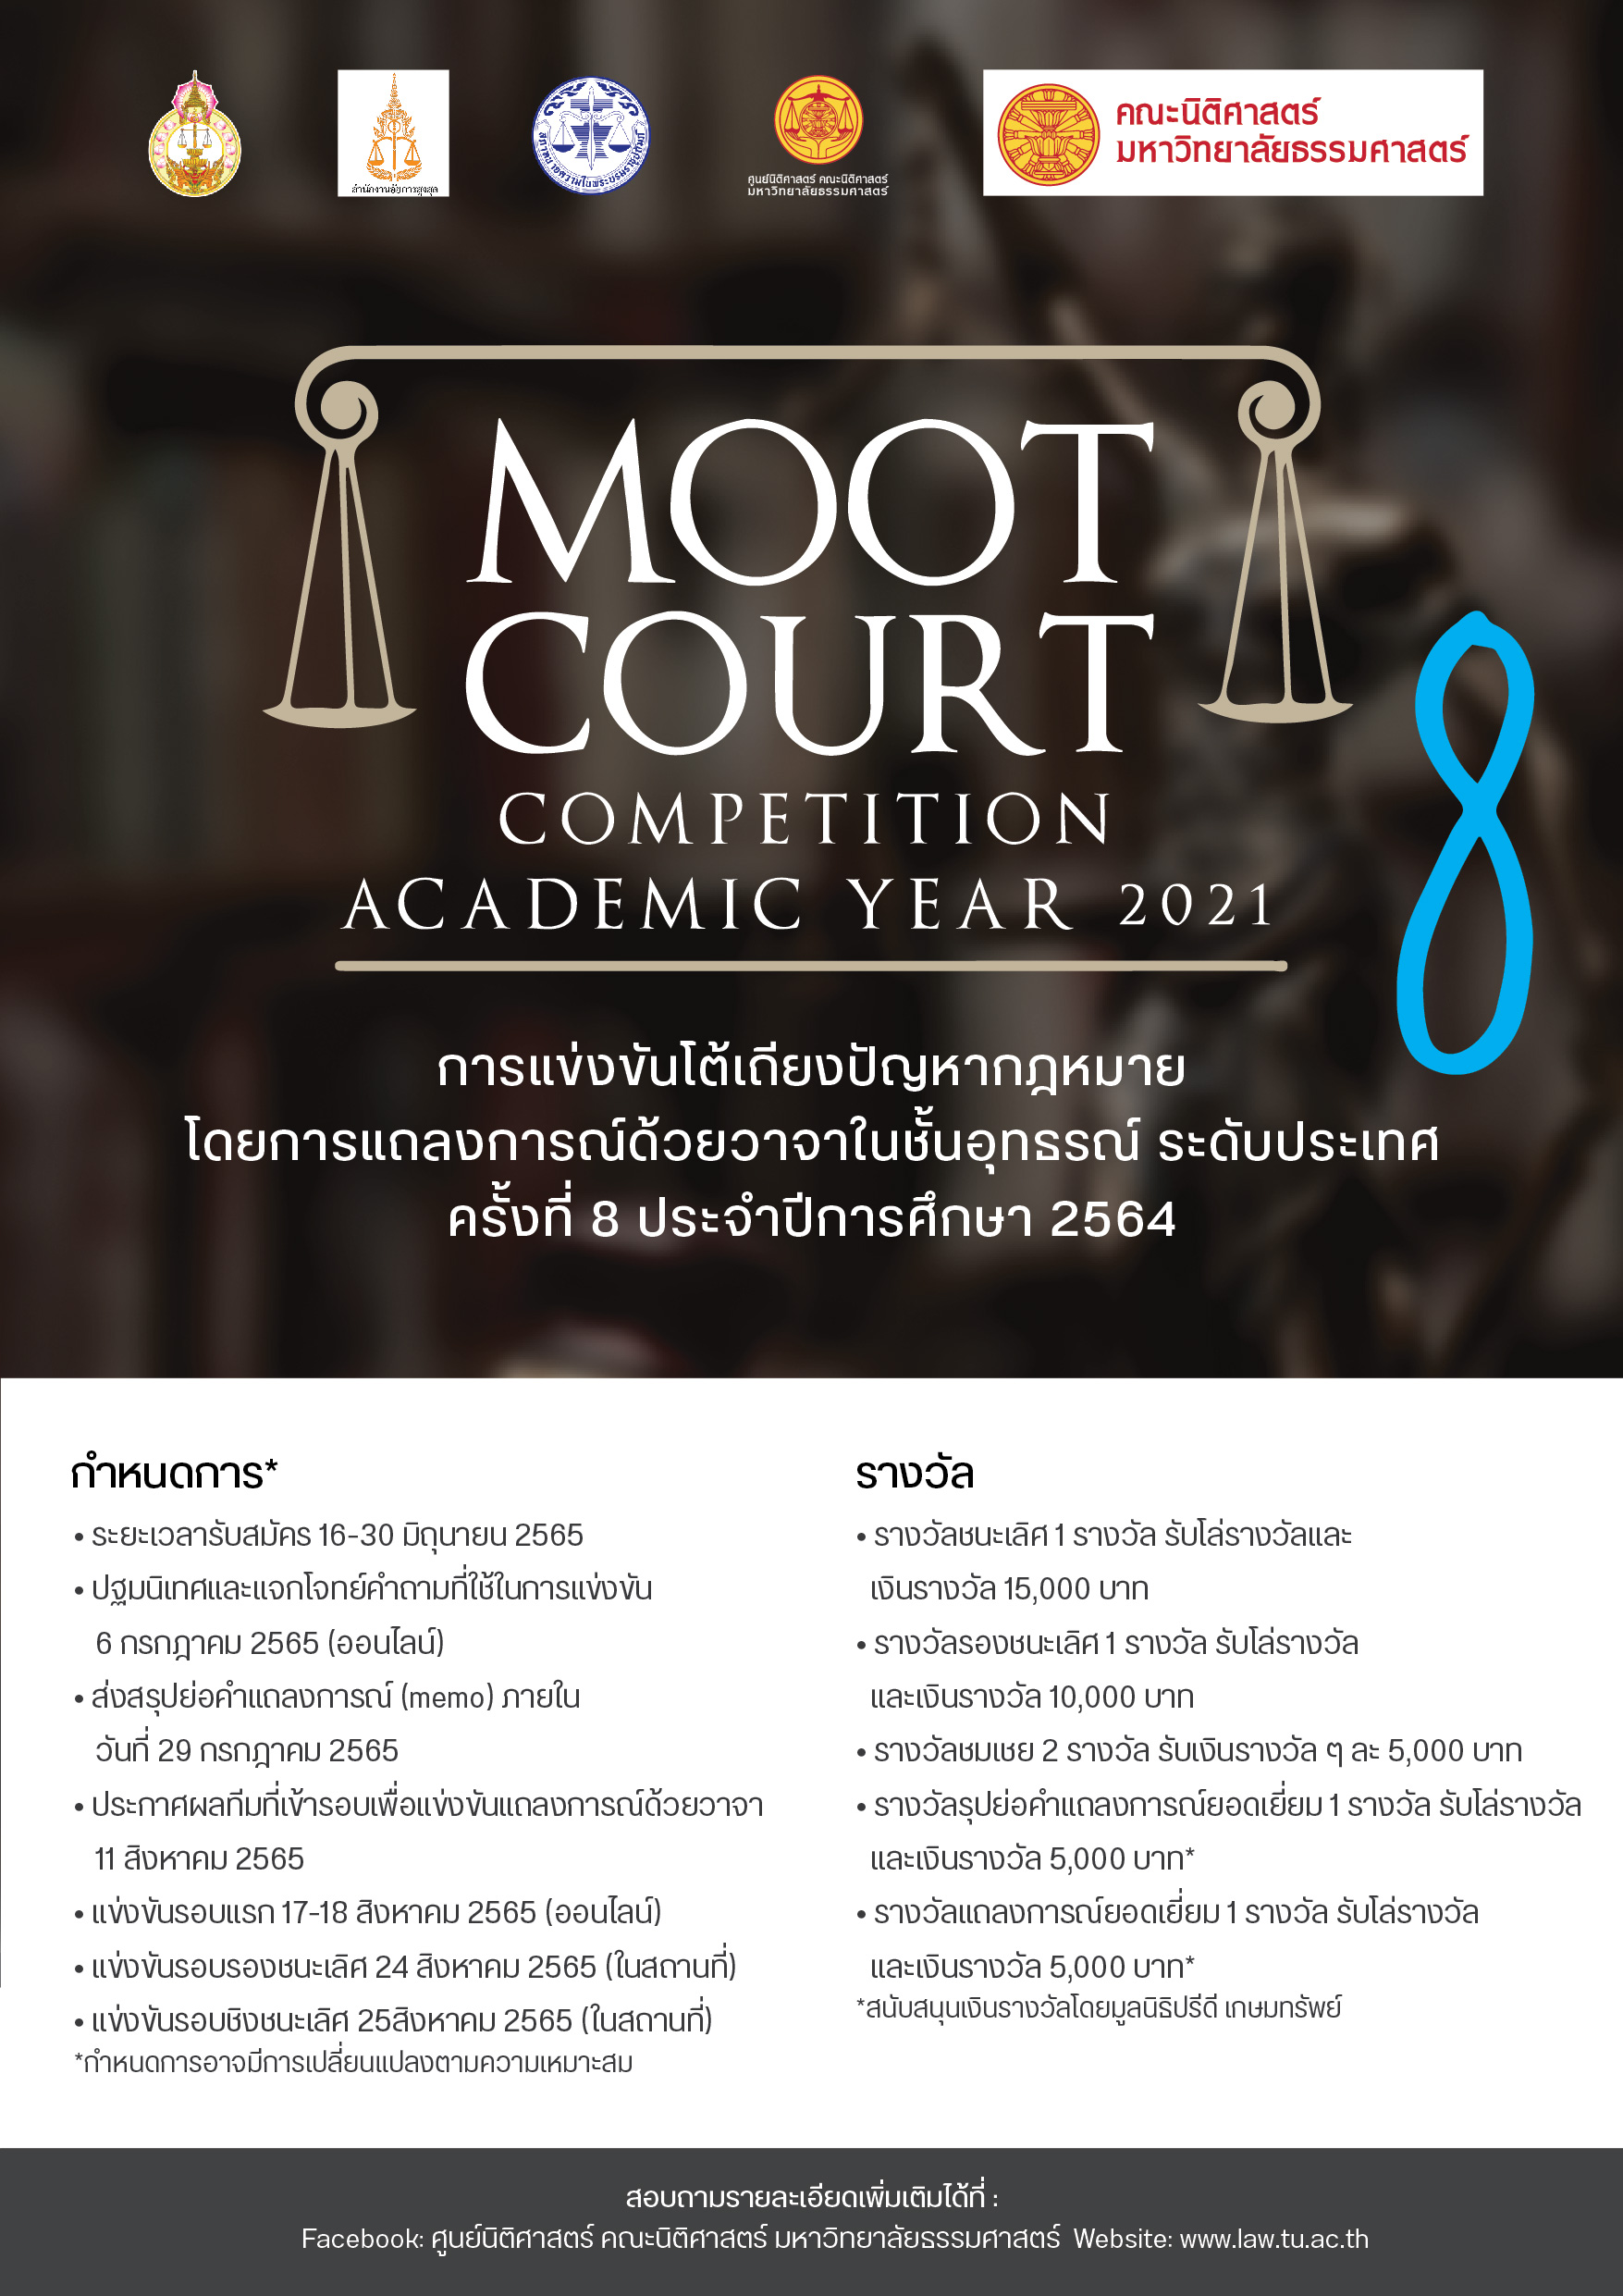 รายละเอียดเกี่ยวกับการแข่งขันโต้เถียงปัญหากฎหมายโดยการแถลงการณ์ด้วยวาจาในชั้นอุทธรณ์ ระดับประเทศ ครั้งที่ 8 ประจำปีการศึกษา 2564 (Moot Court Competition Academic Year 2021)